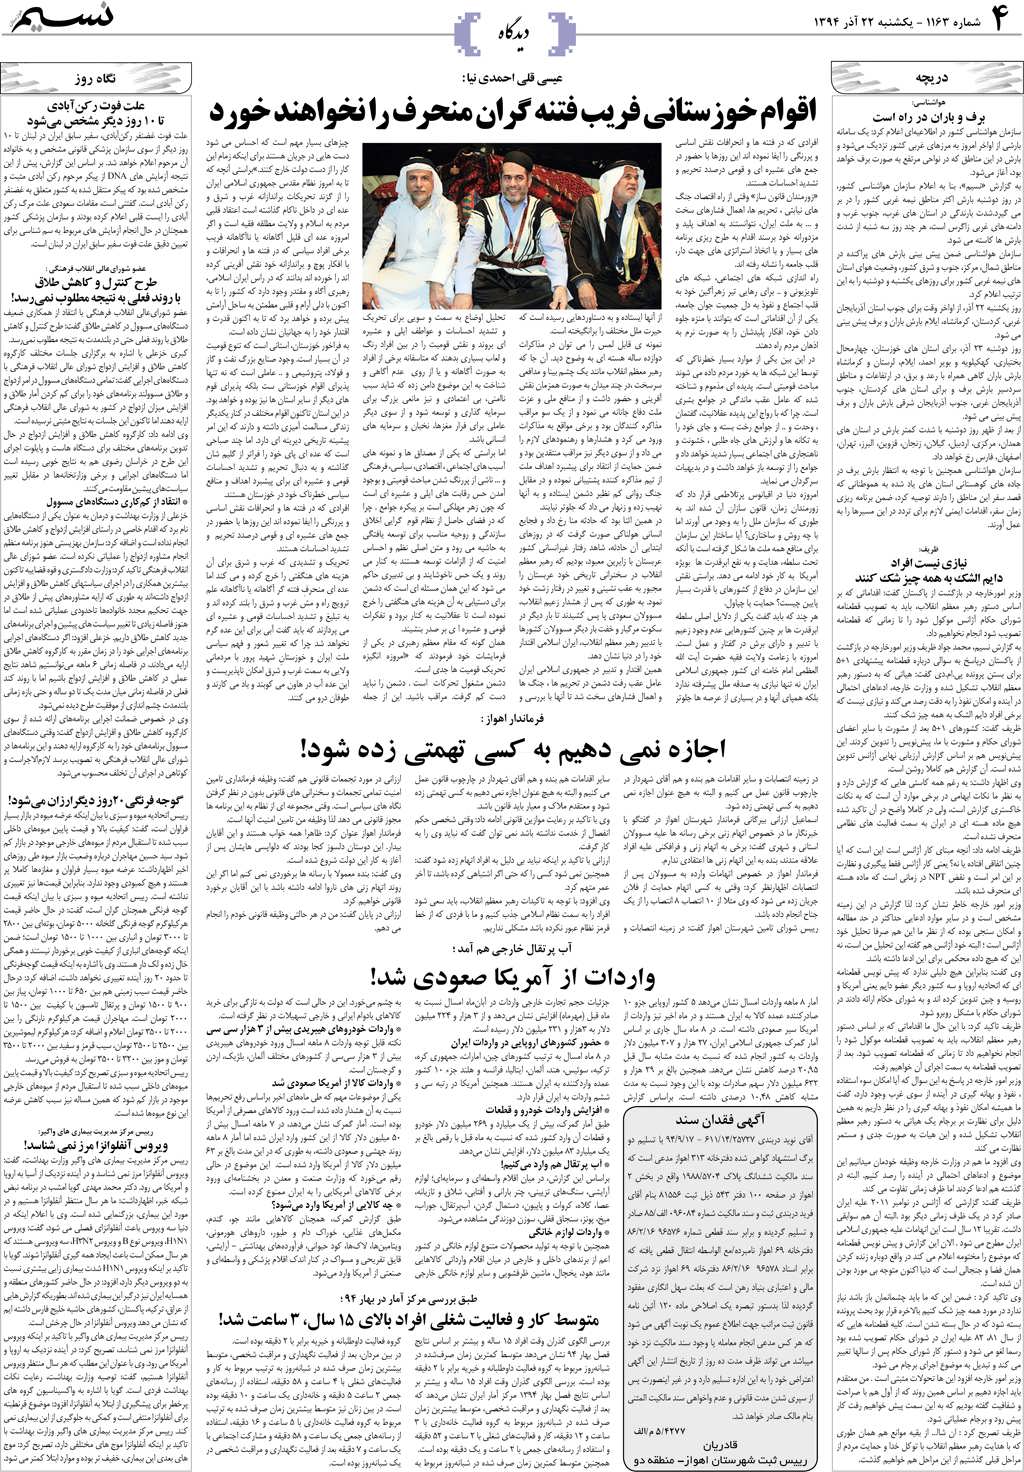 صفحه دیدگاه روزنامه نسیم شماره 1163